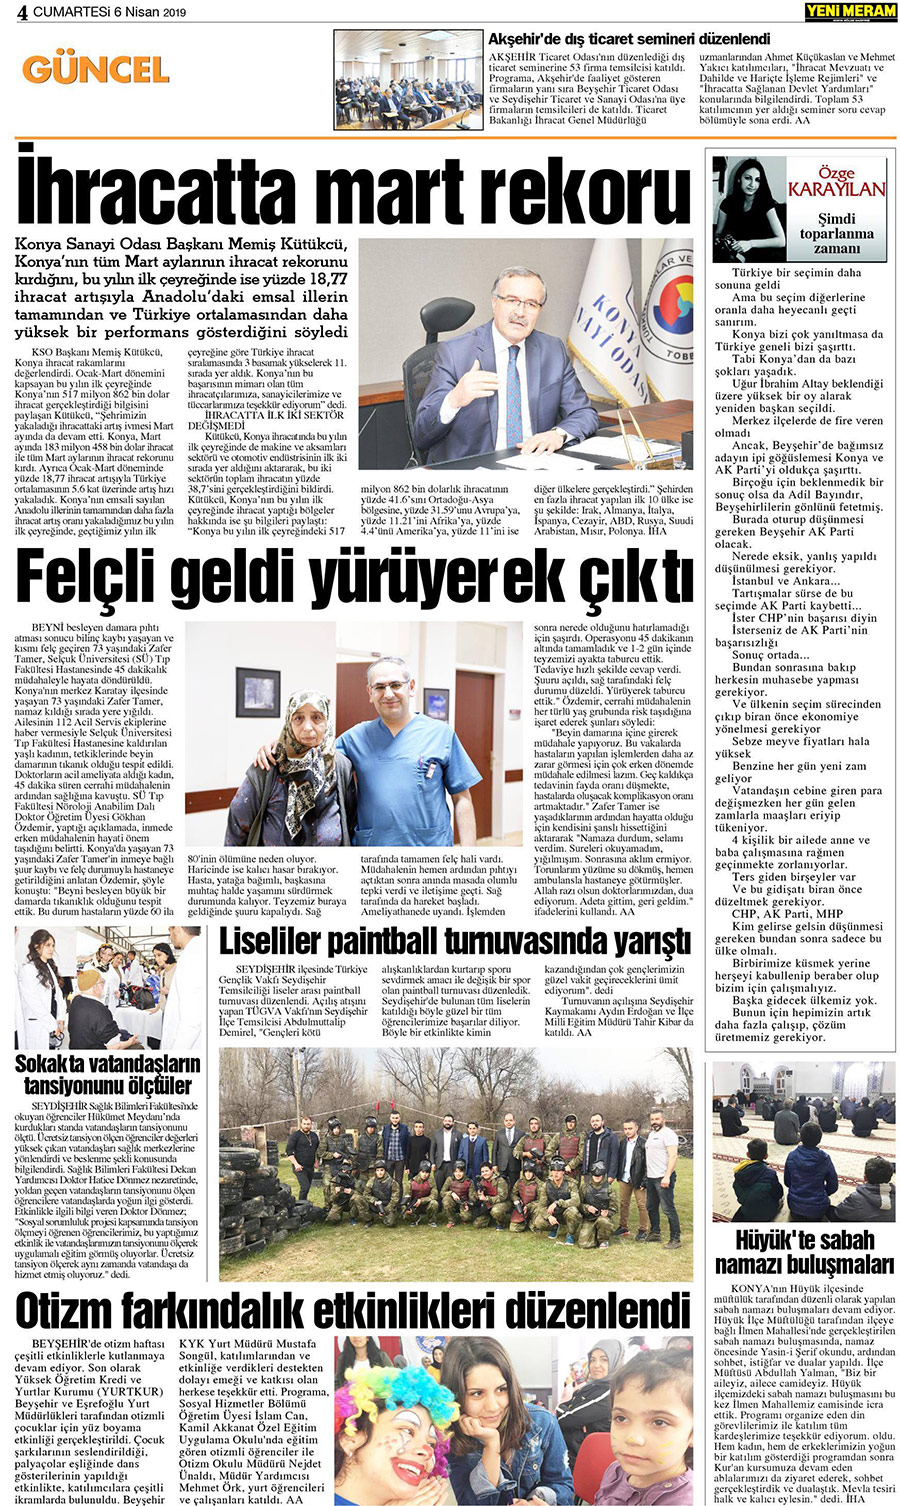 6 Nisan 2019 Yeni Meram Gazetesi